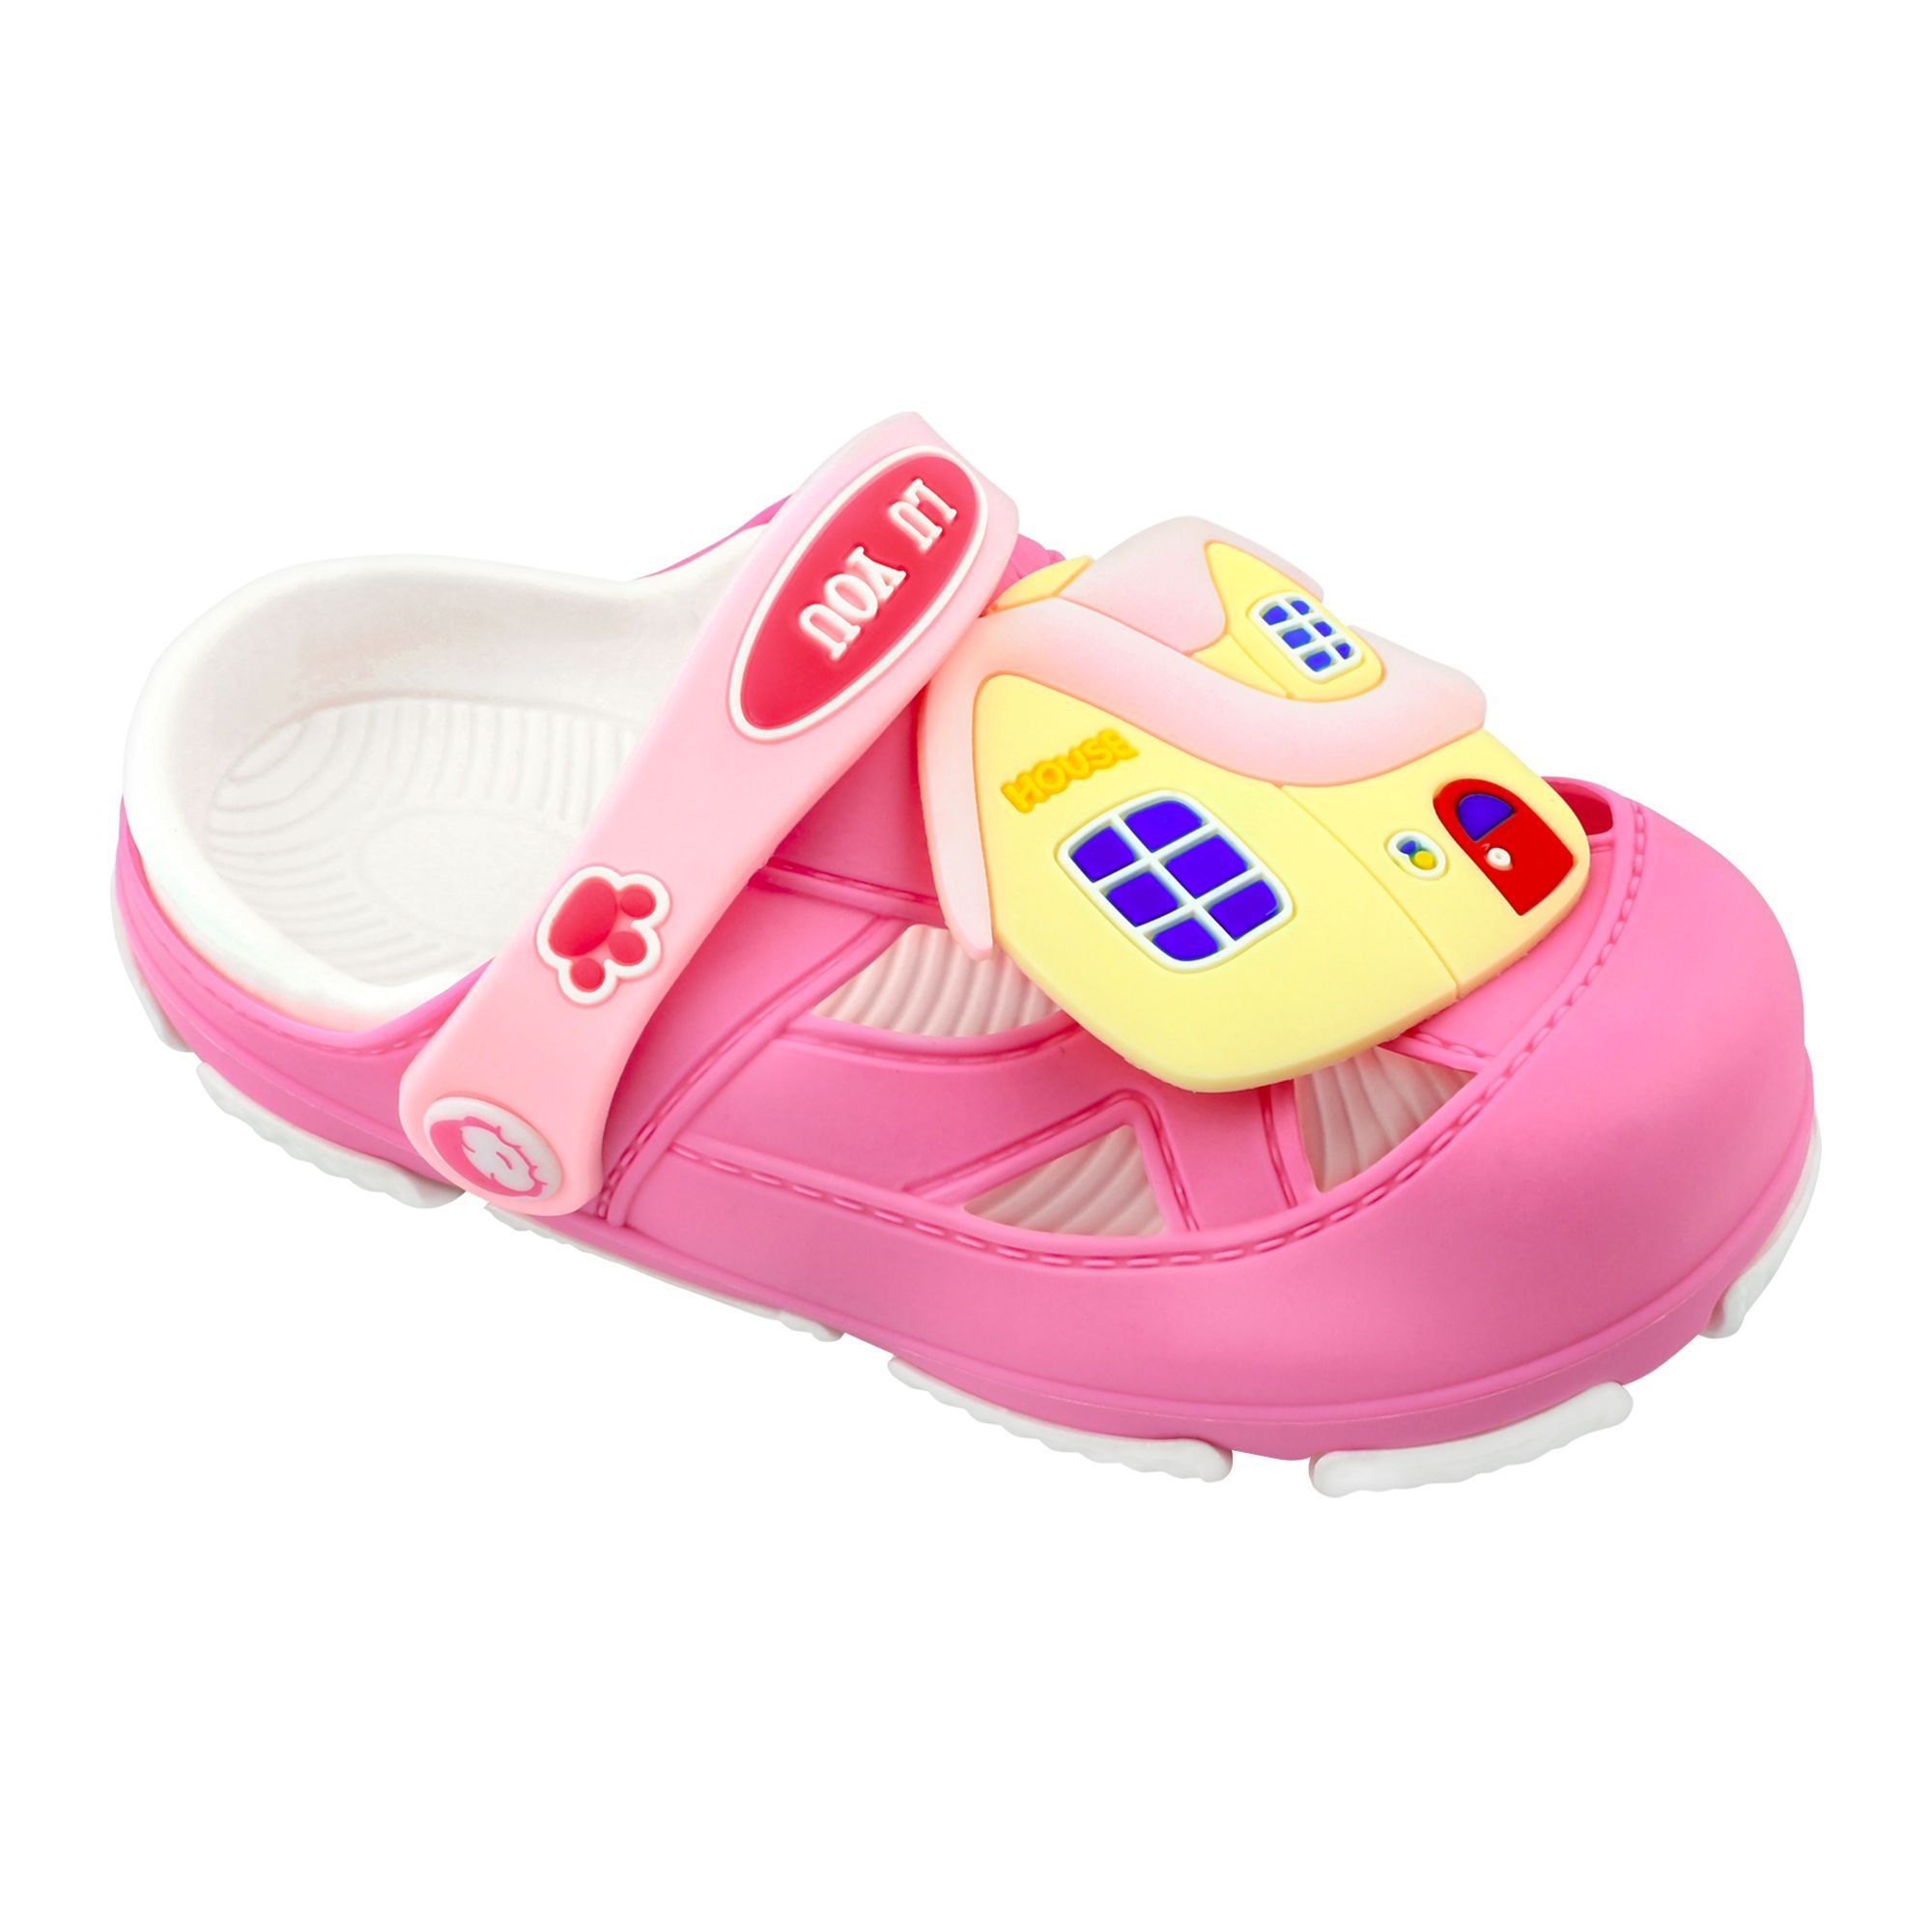 Buy Baby Crocs Kids Sandals, F-3, Pink 